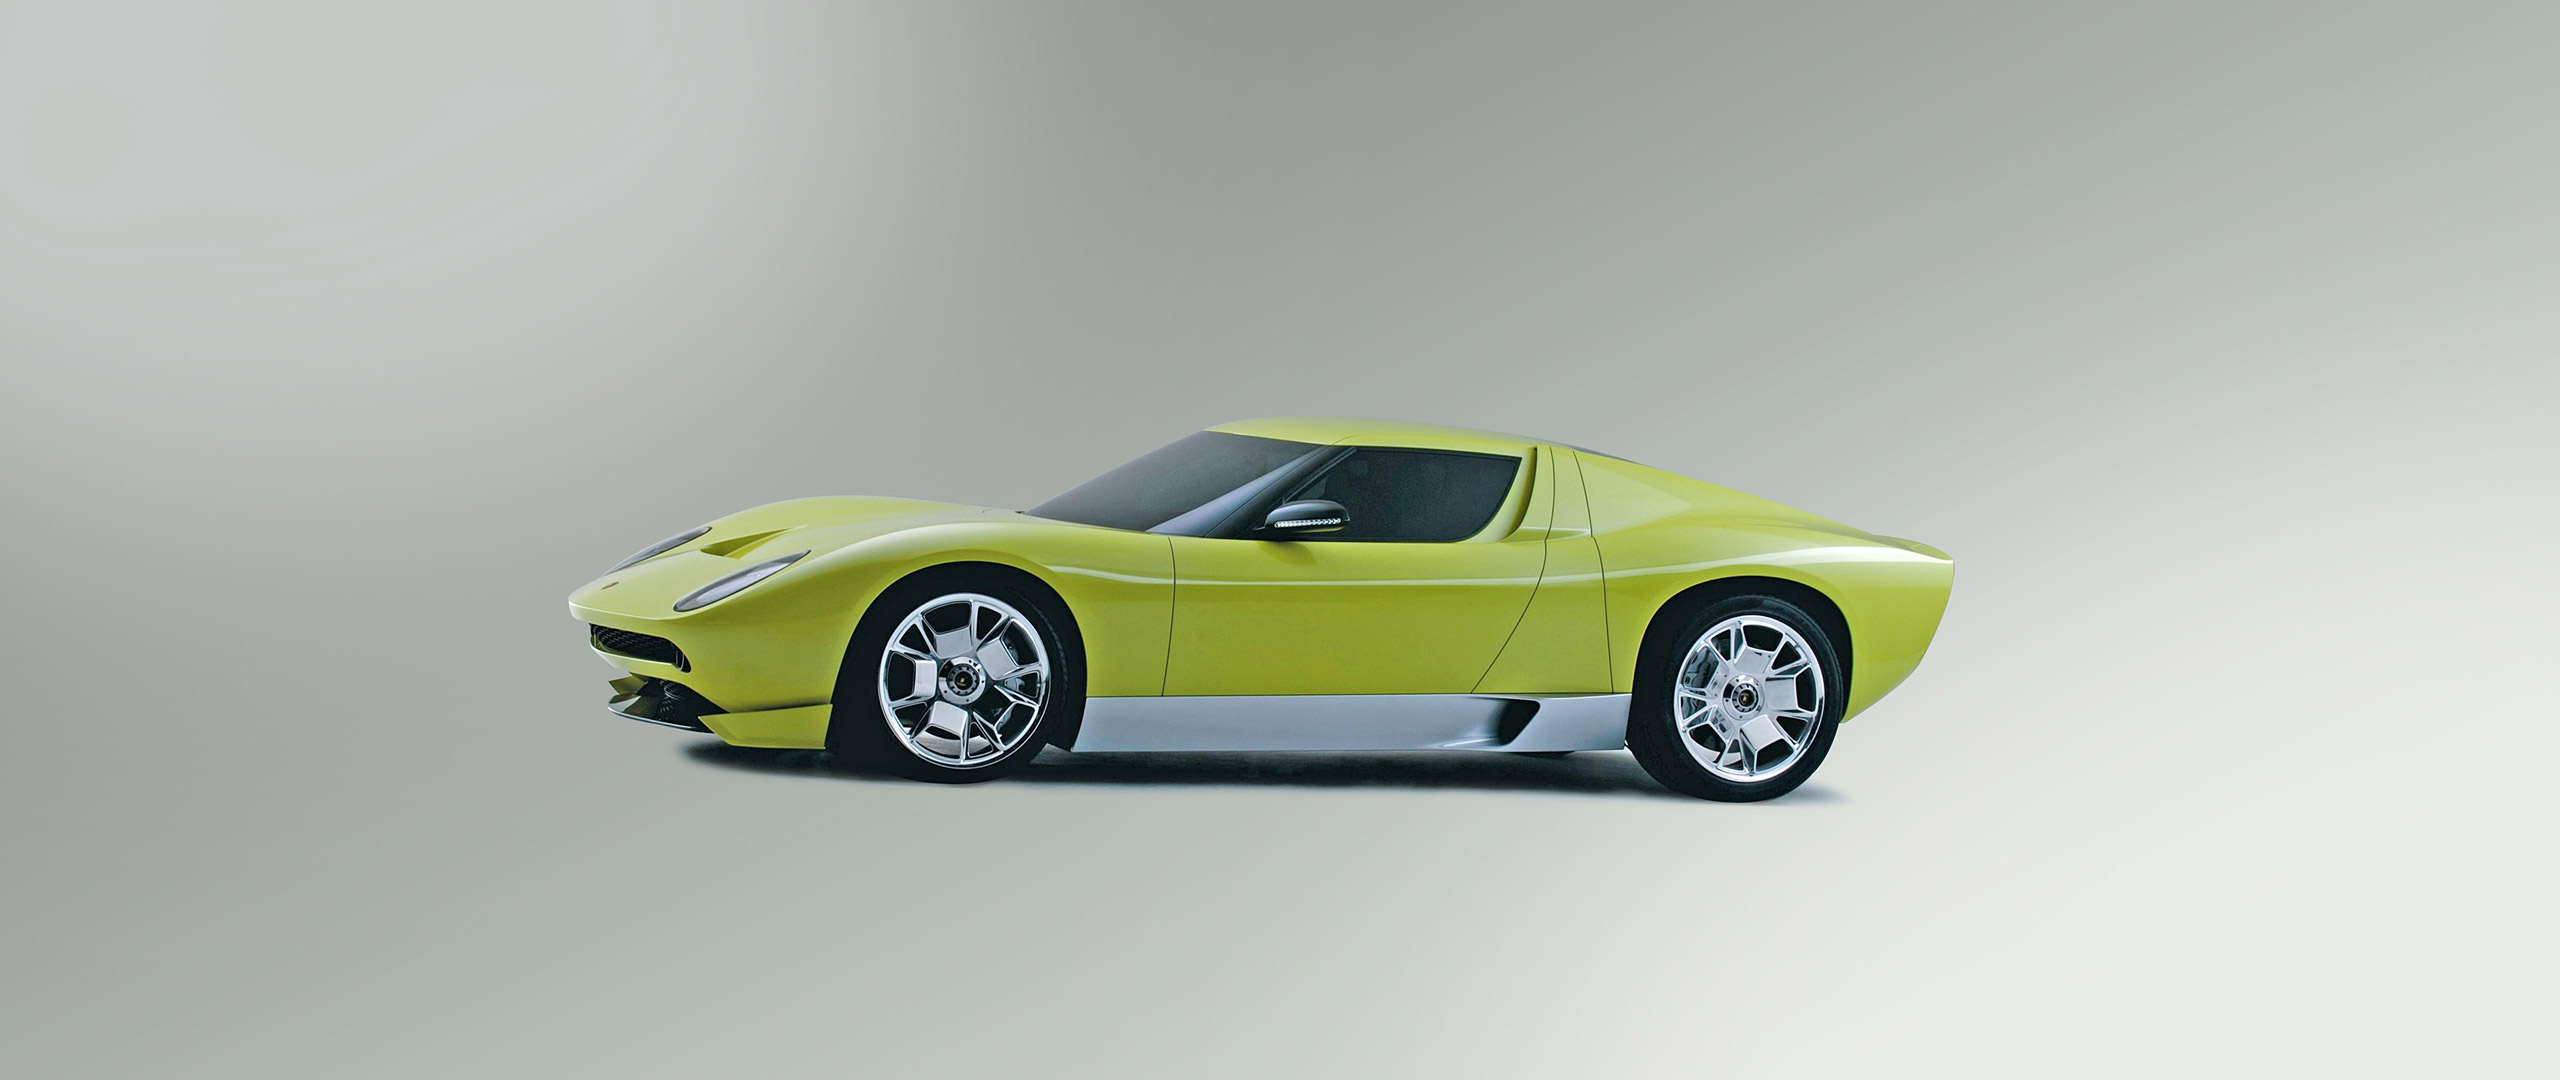  2006 Lamborghini Miura Concept Wallpaper.